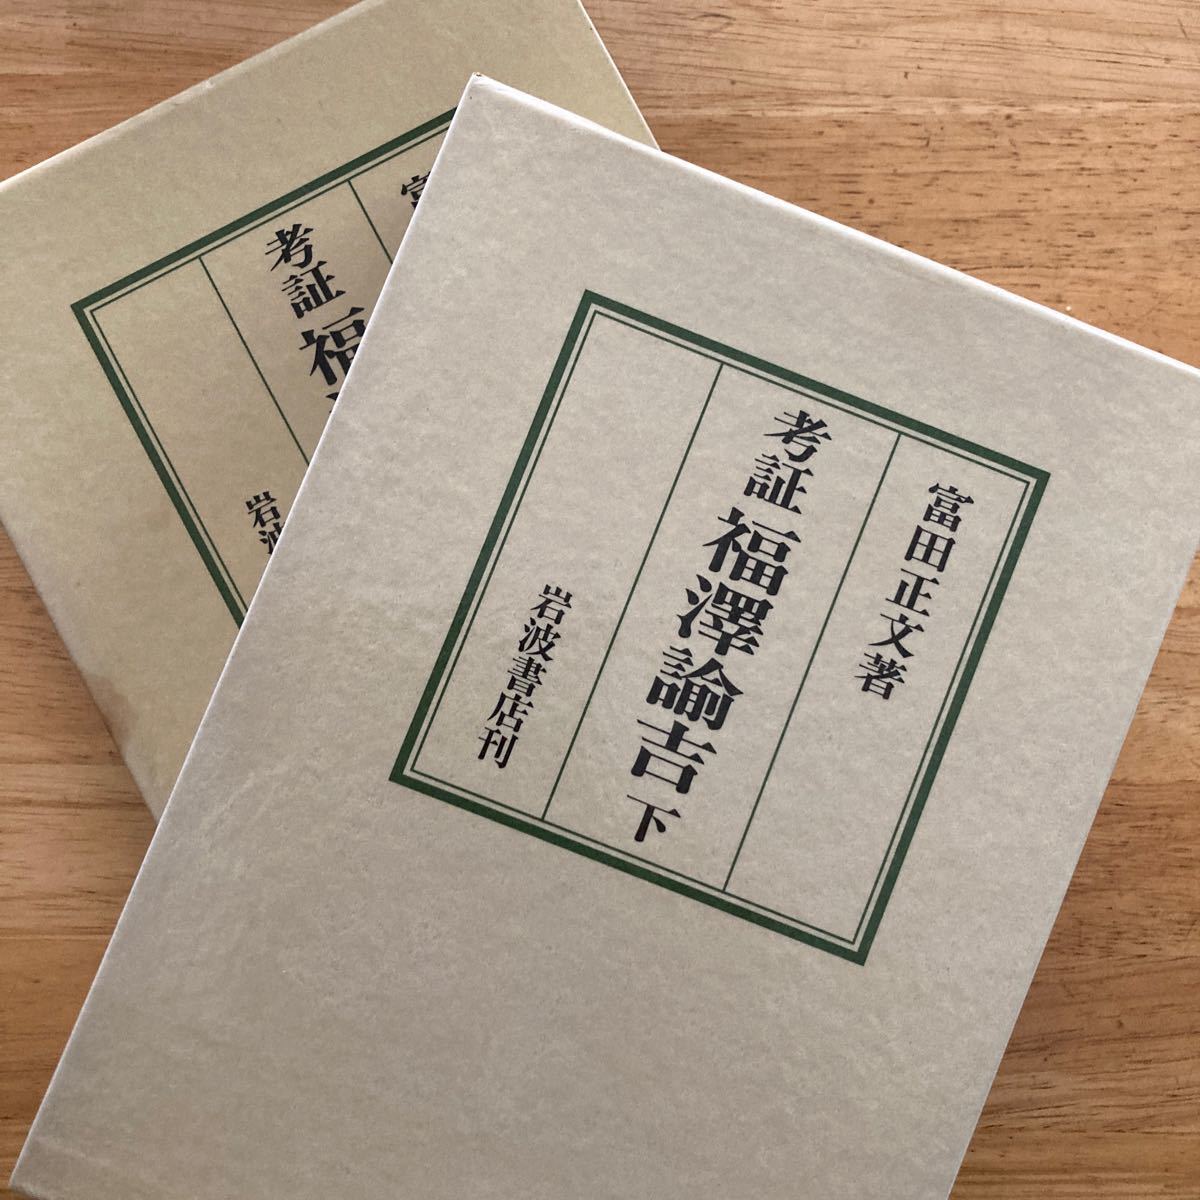 『考証　福沢諭吉』上下、富田正文著、岩波書店。1992年初版版。